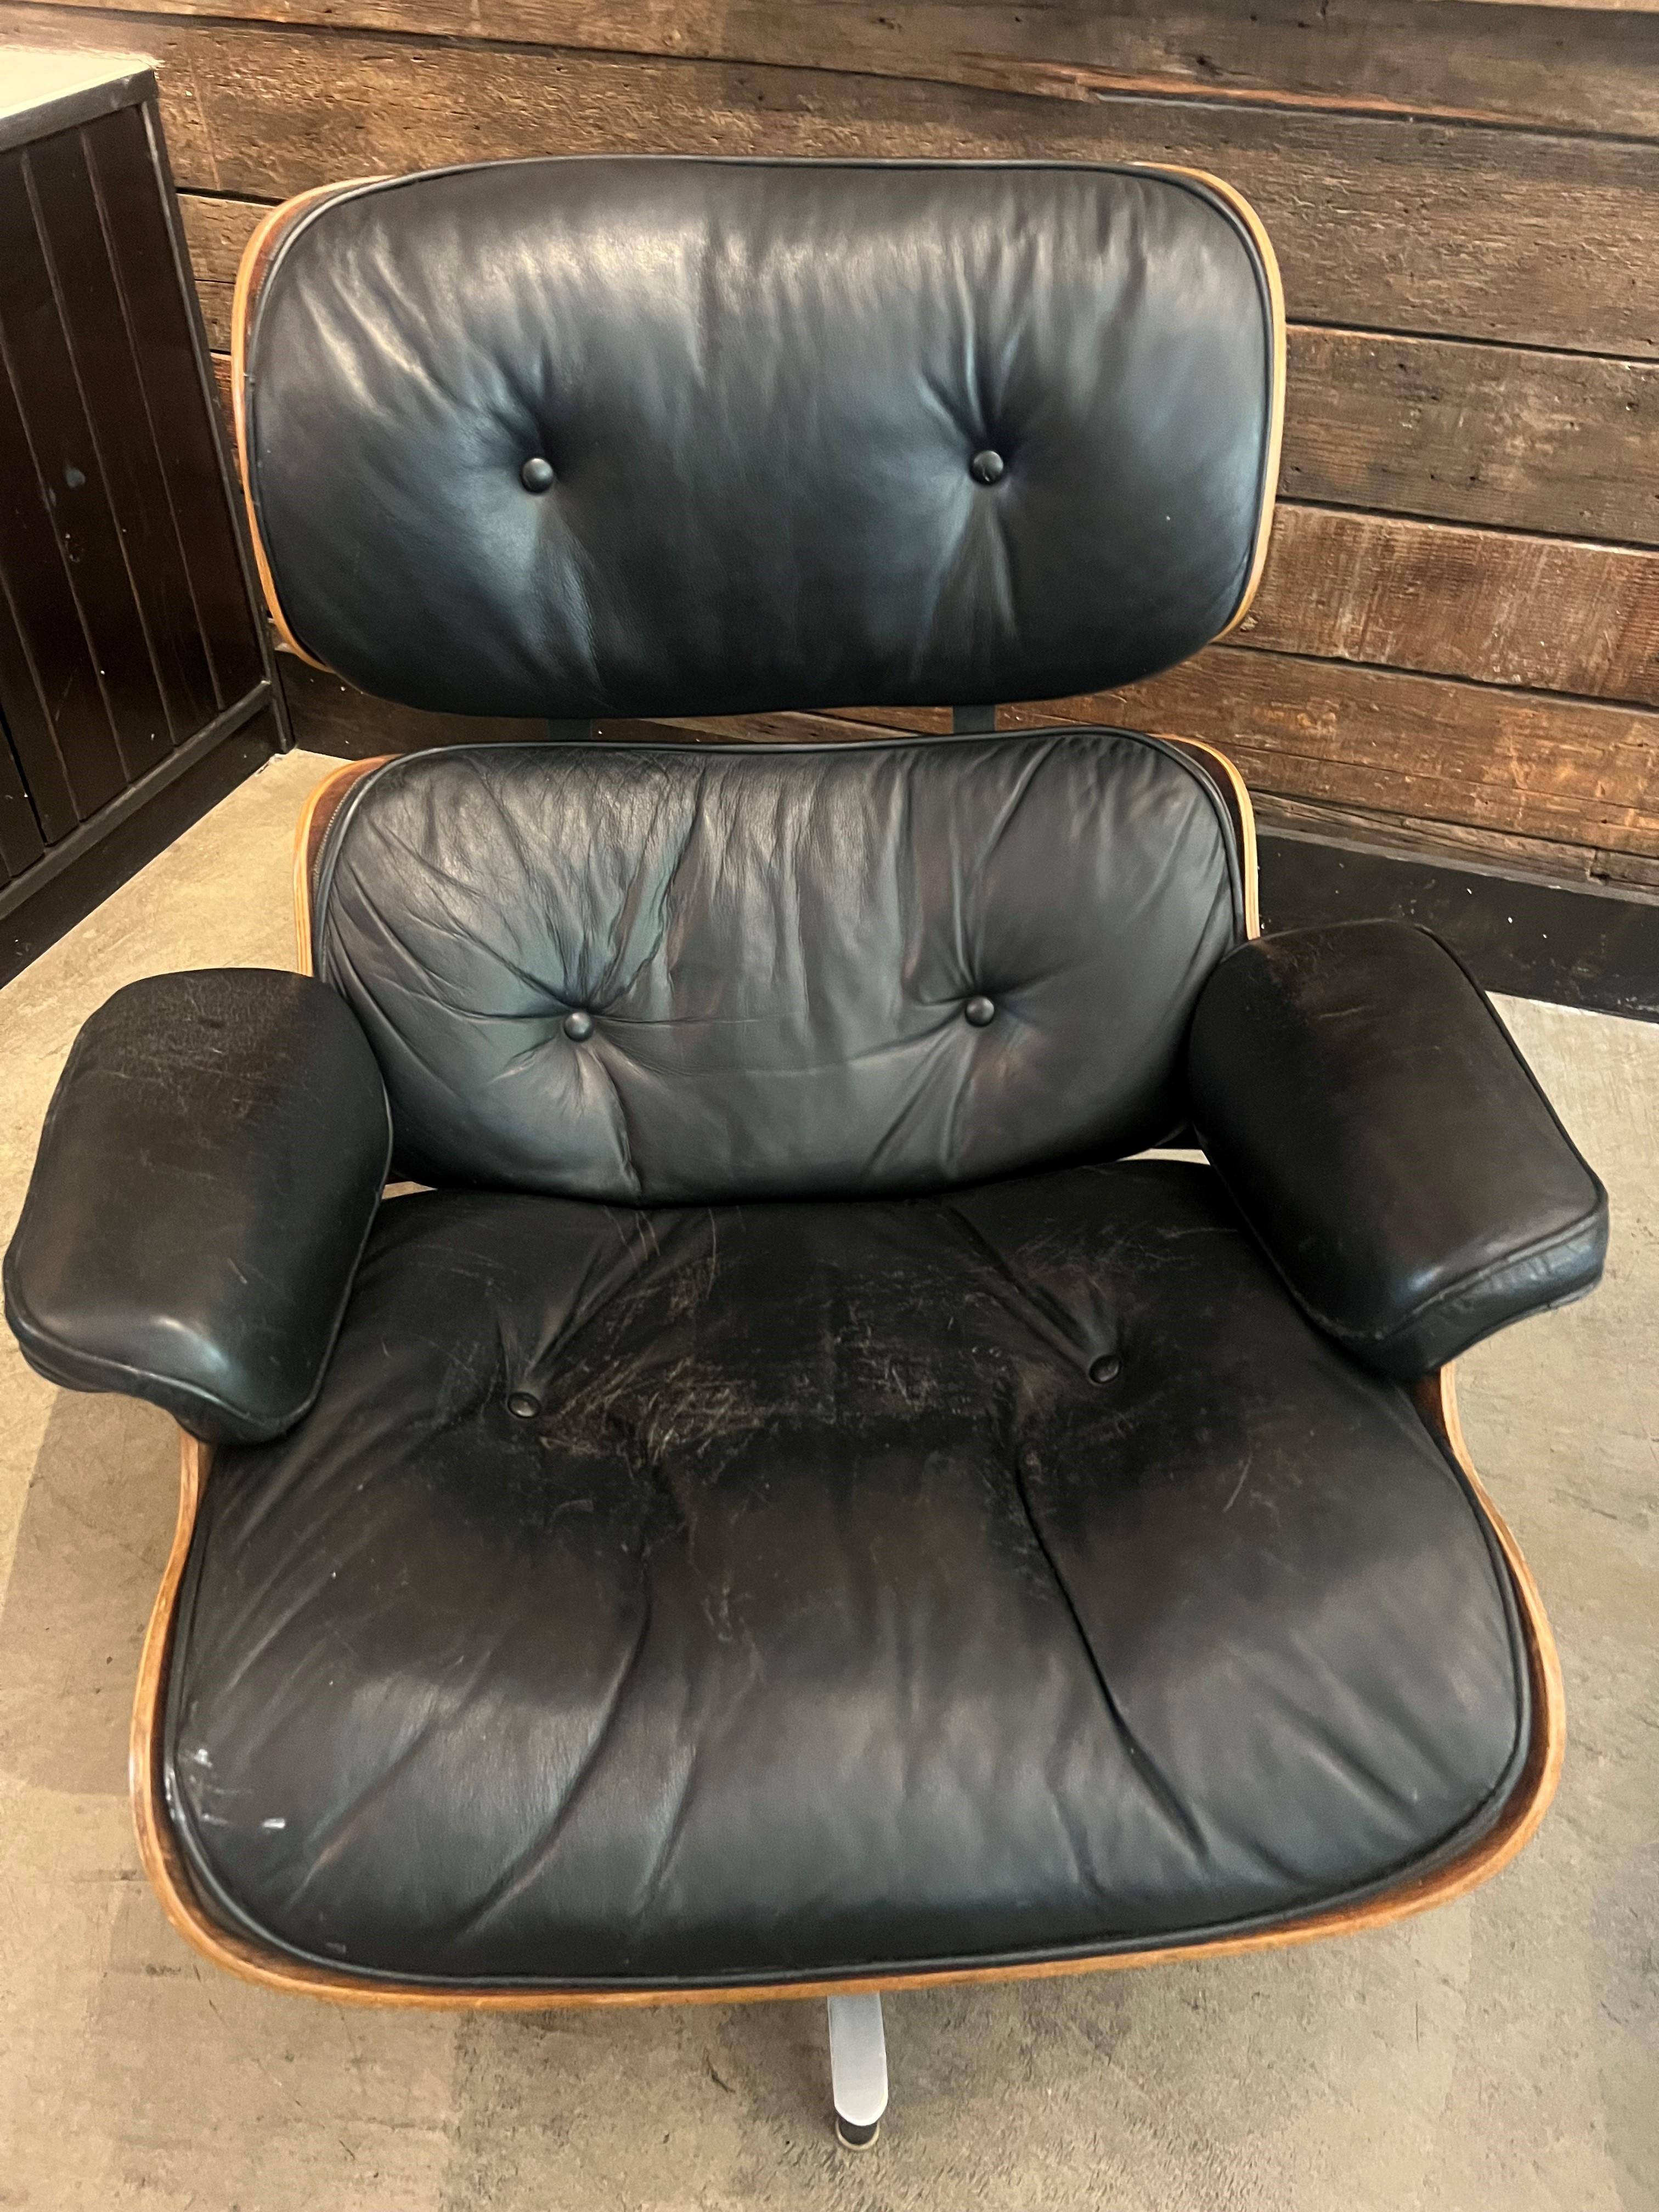 La chaise longue et l'Icone sont des meubles emblématiques créés par Charles et Ray Eames. Il est largement considéré comme l'un des meubles modernes les plus importants et les plus durables.

Conçus en 1956, le Lounge Chair et l'Ottoman étaient